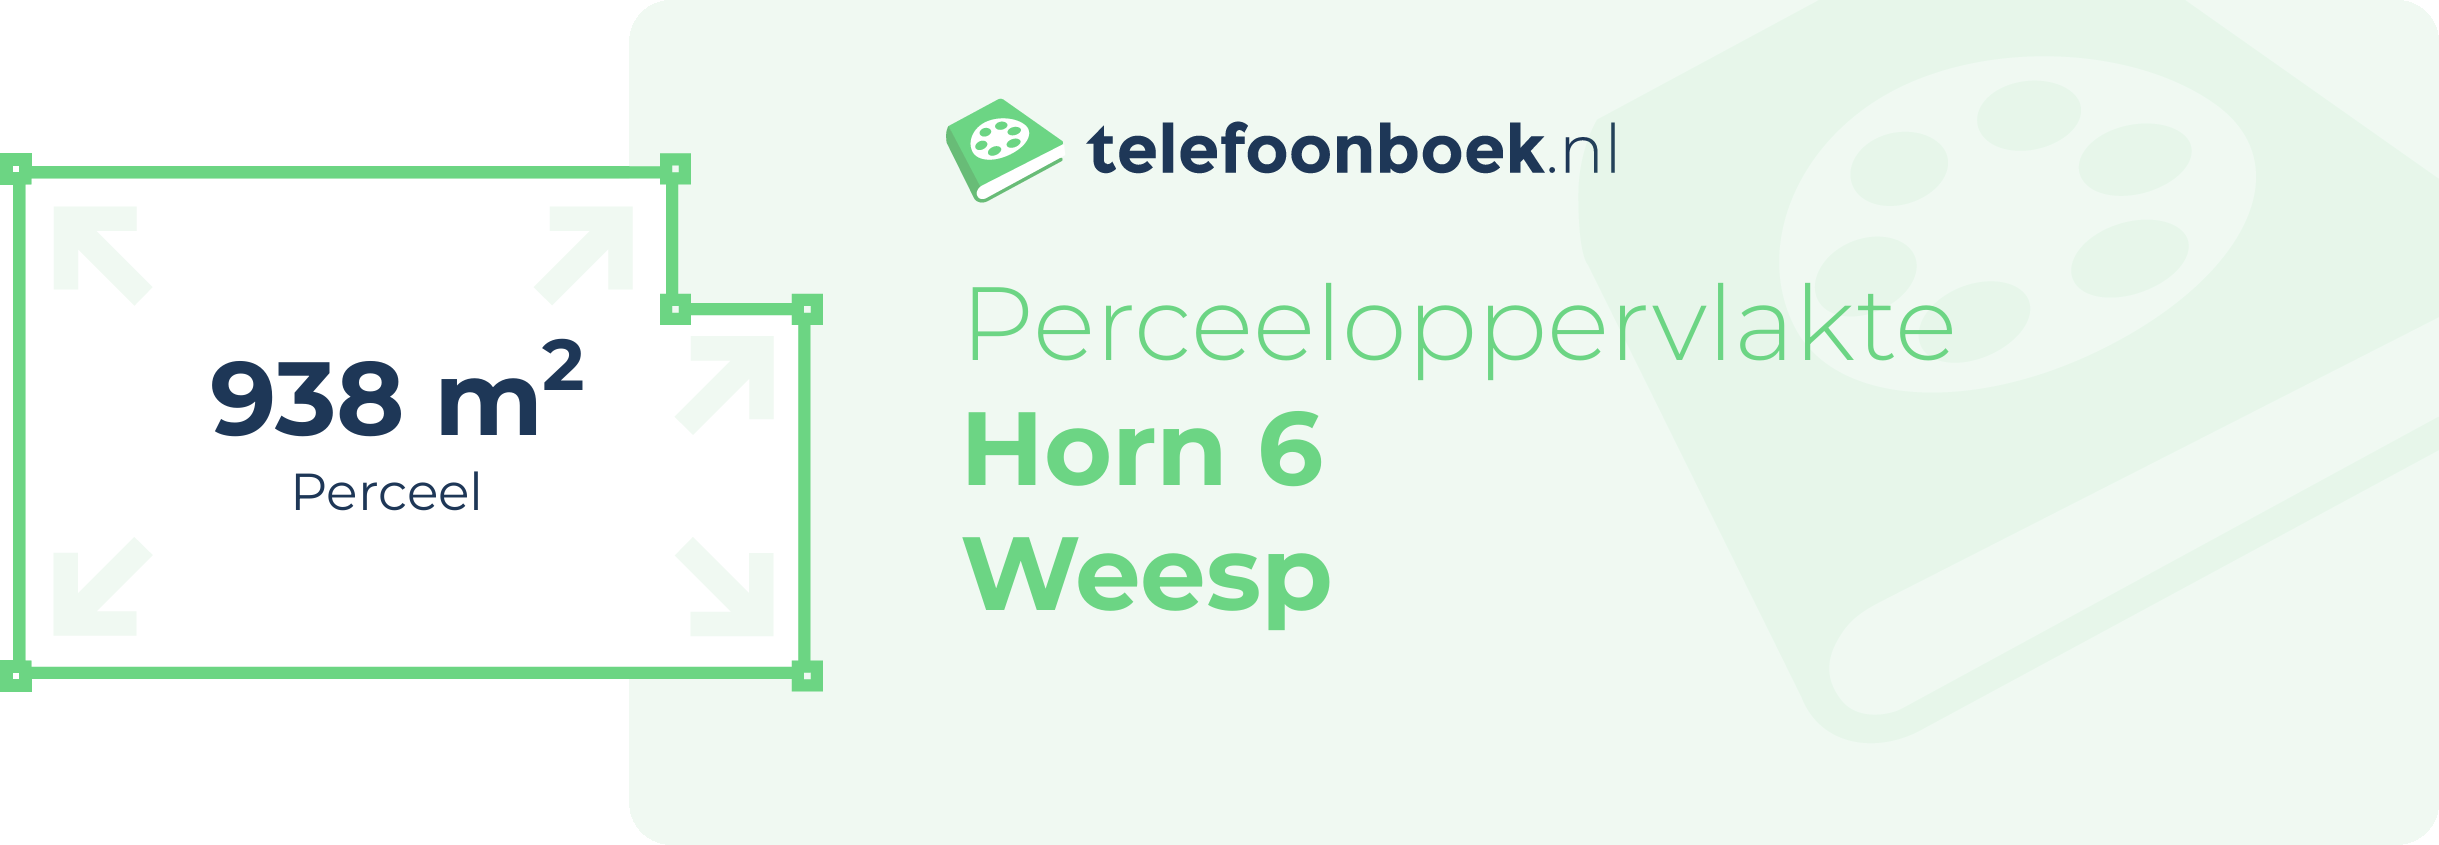 Perceeloppervlakte Horn 6 Weesp